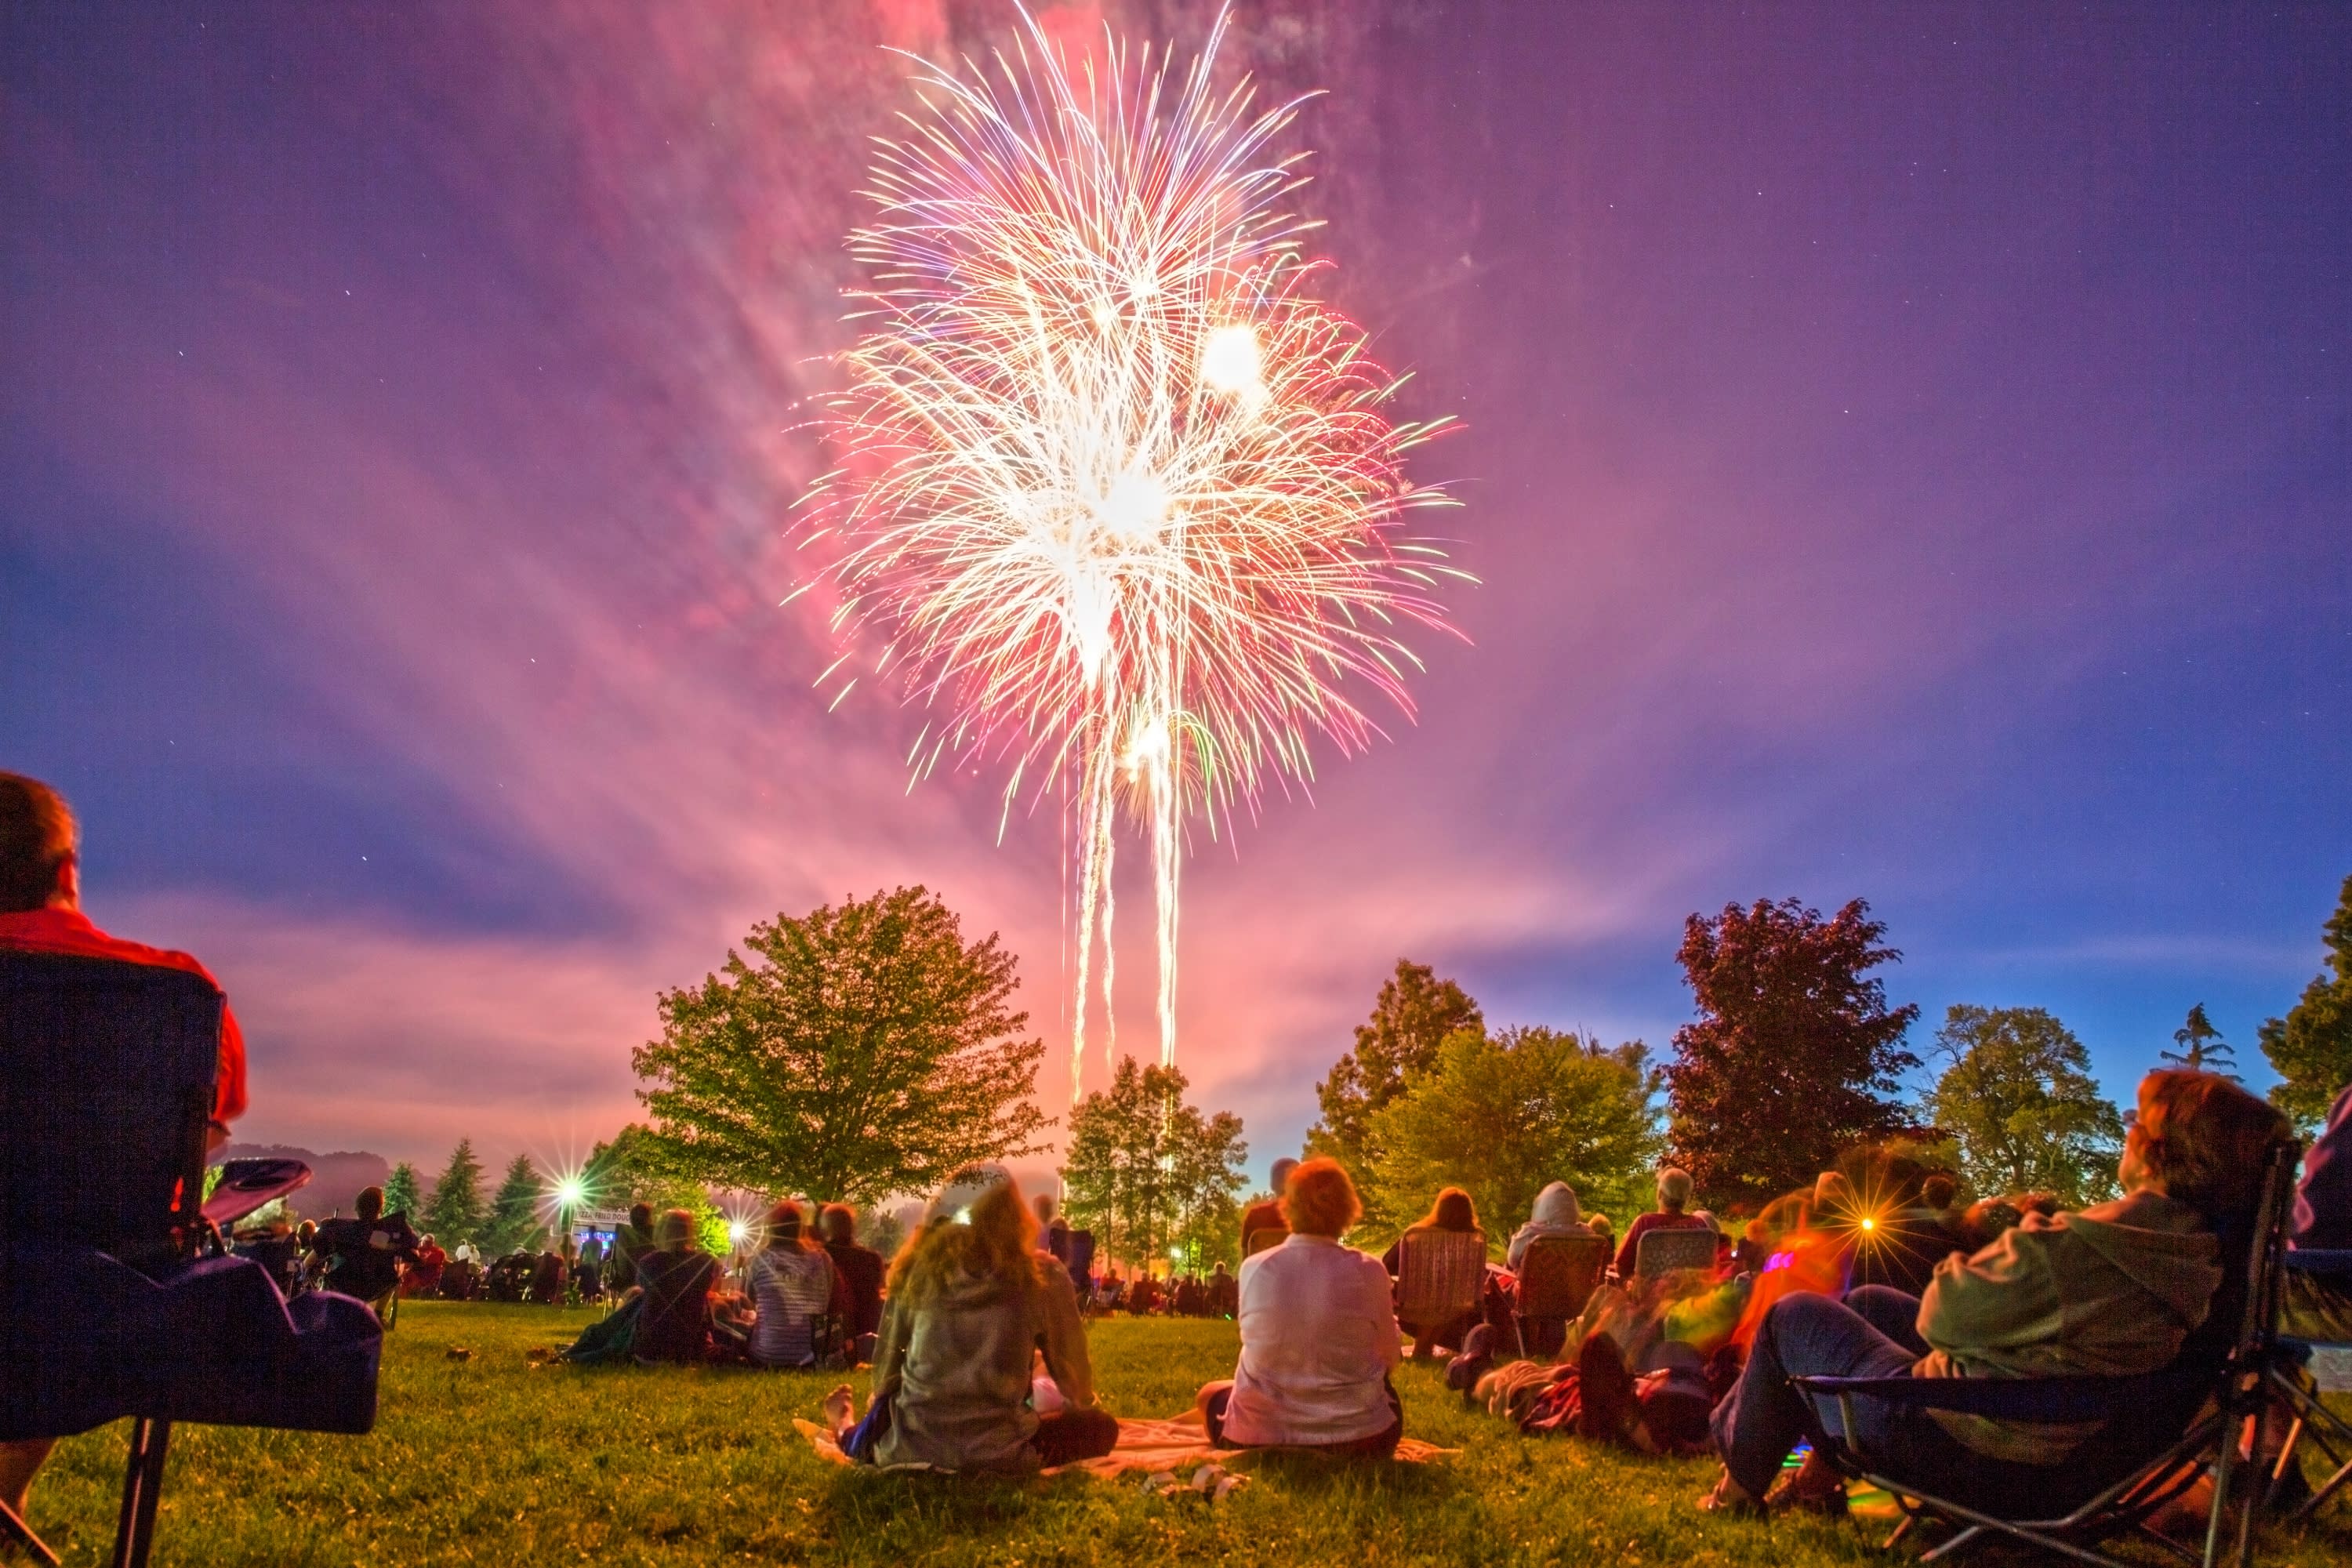 Emerson Park Fireworks | Auburn, NY 13021